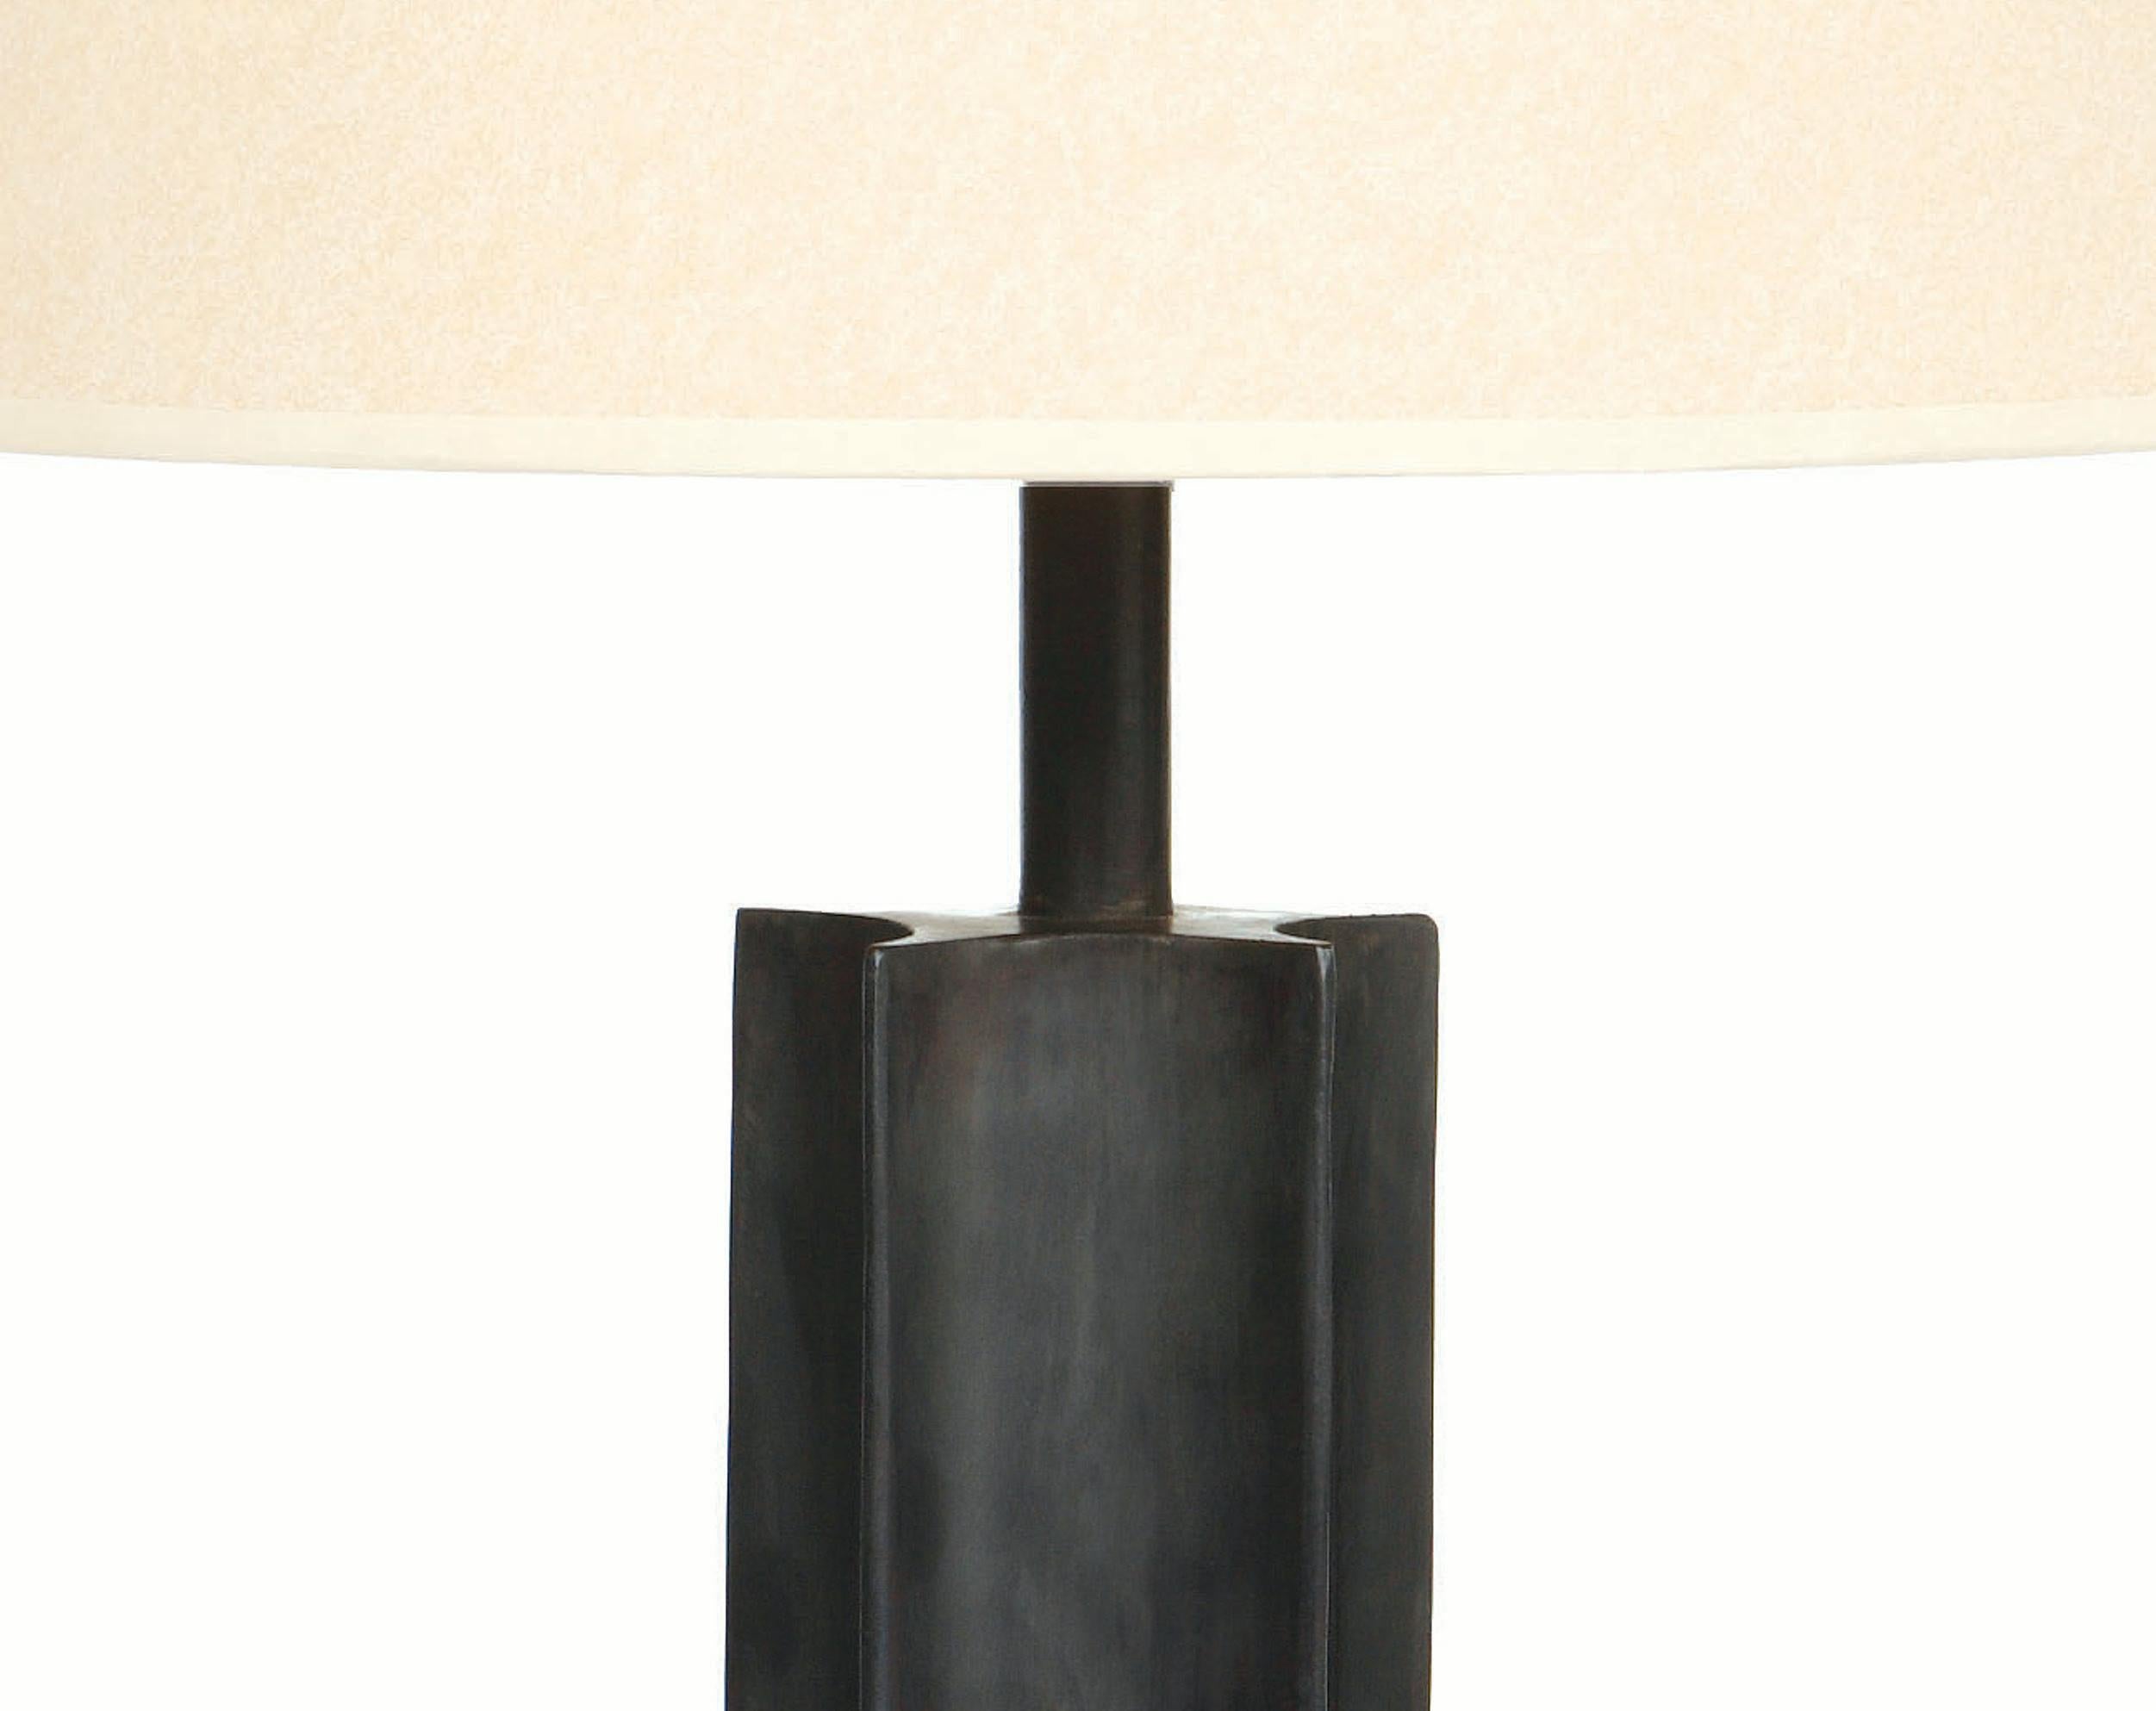 La lampe de table Star est dotée d'une base en acier noirci par frottement à l'huile.

La puissance maximale recommandée de l'ampoule est de 100W. La lampe de table Star est homologuée UL.

Les dimensions de la lampe de table Star indiquées